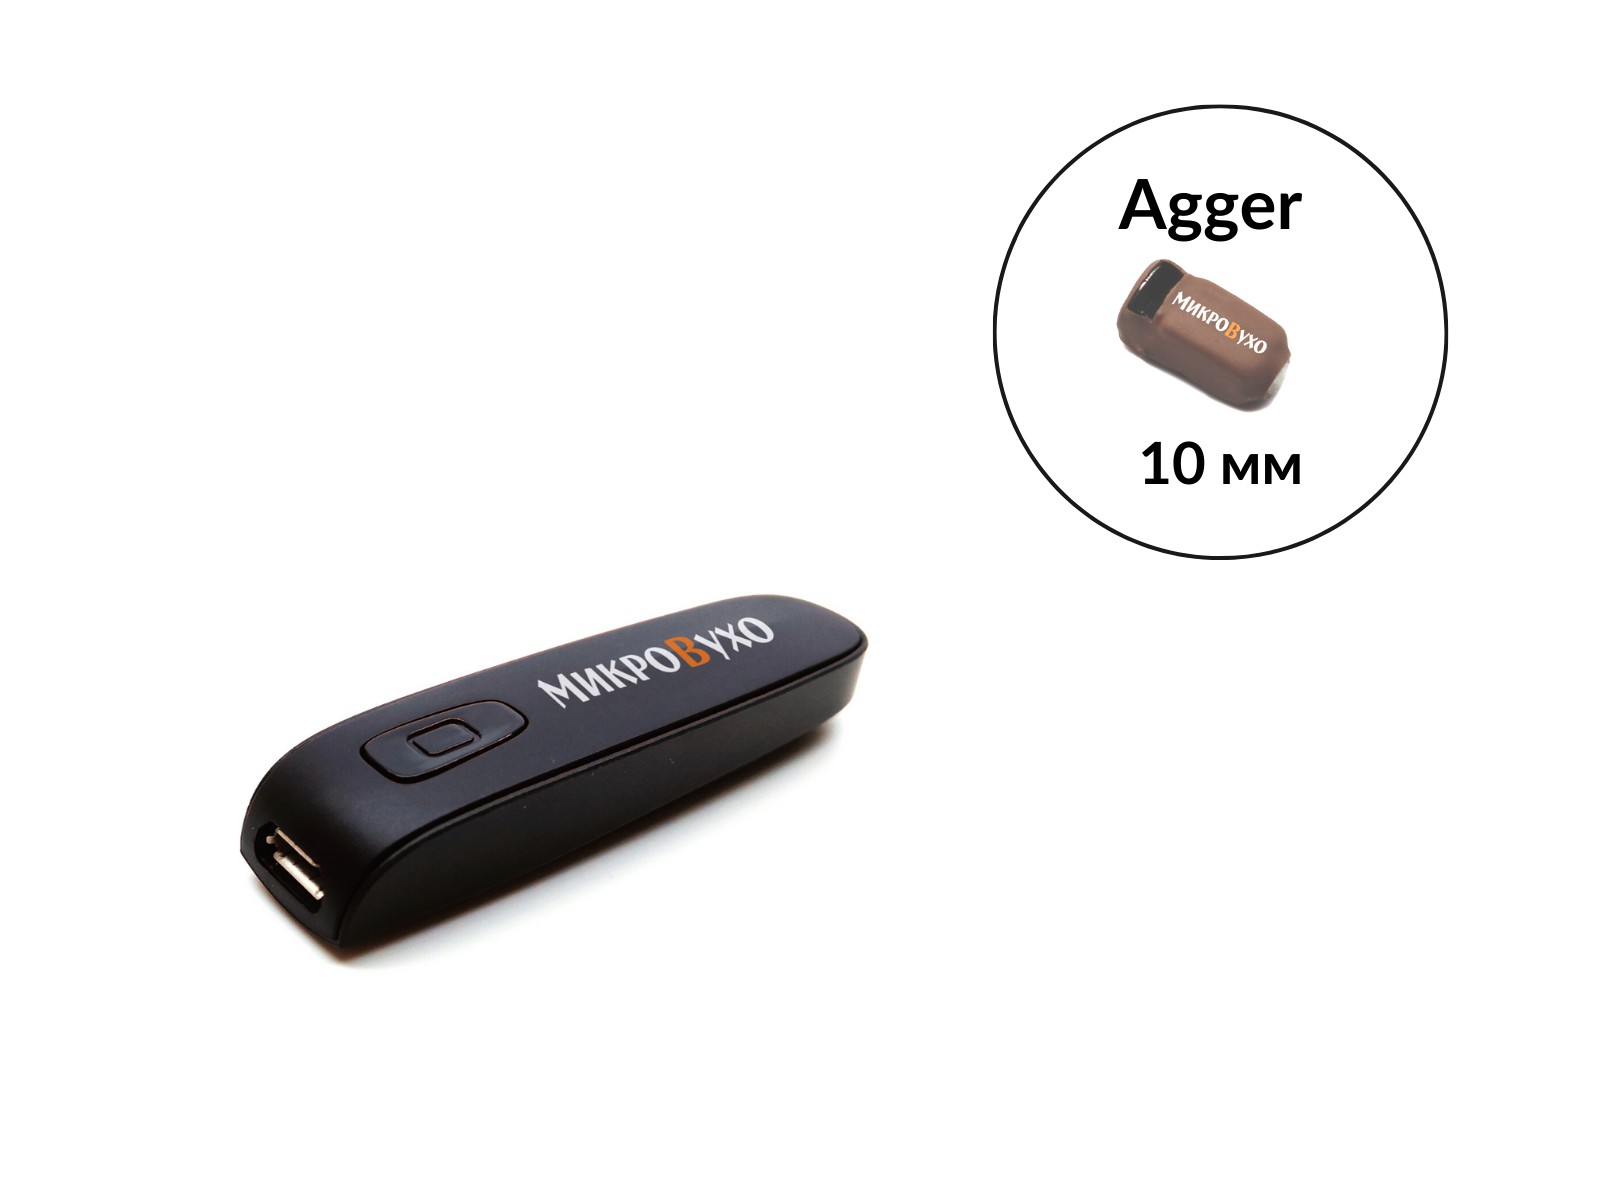 Гарнитура Bluetooth Box Basic с капсульным микронаушником Agger 10 мм - изображение 12